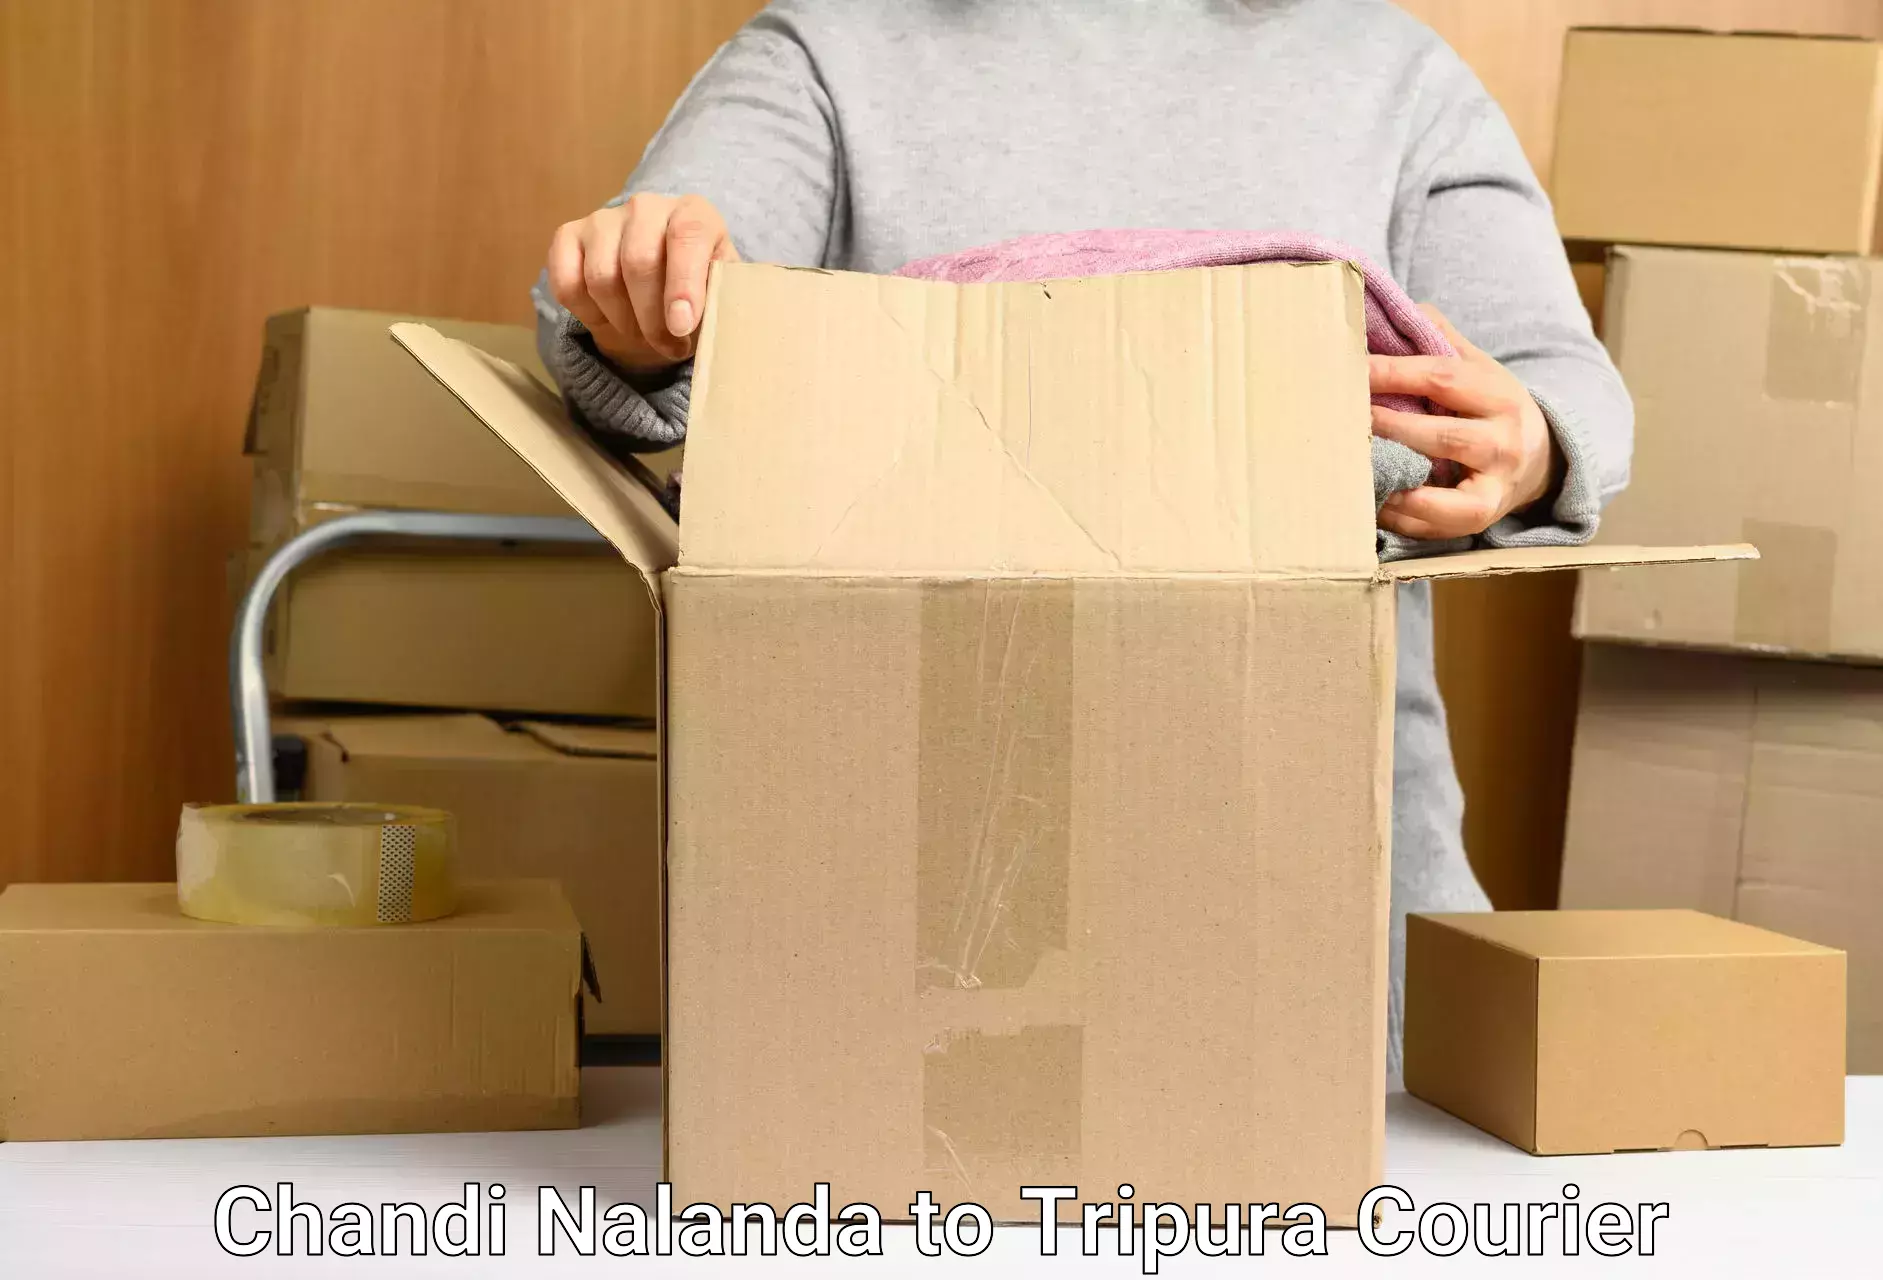 High-capacity shipping options Chandi Nalanda to Teliamura